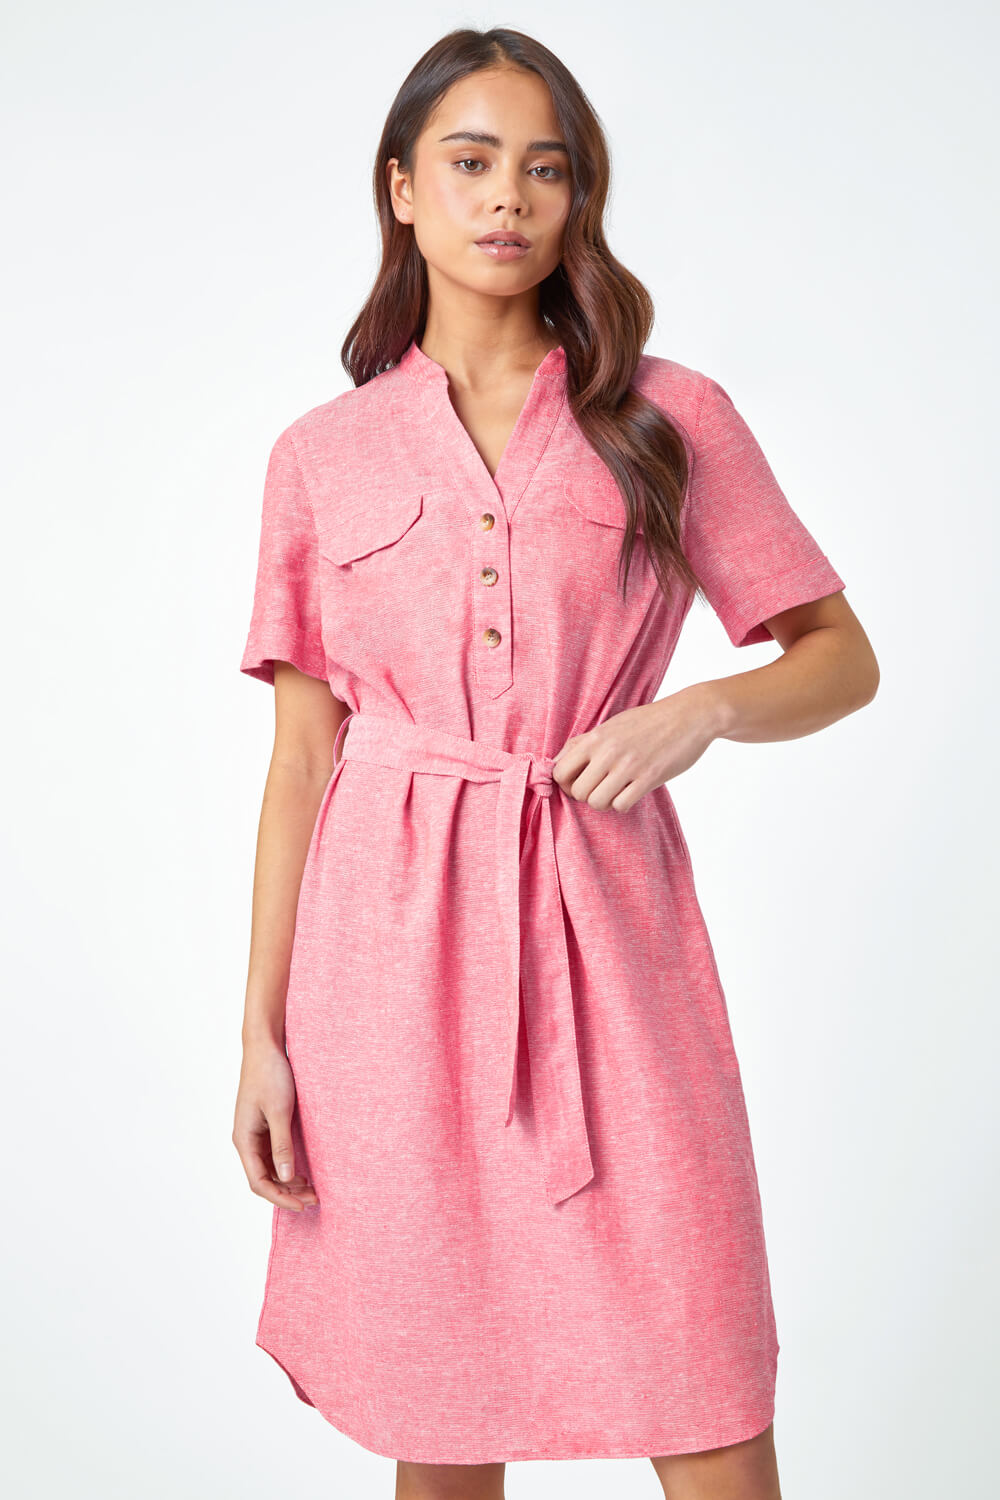 PINK Petite Linen Blend Shirt Shift Dress, Image 4 of 5